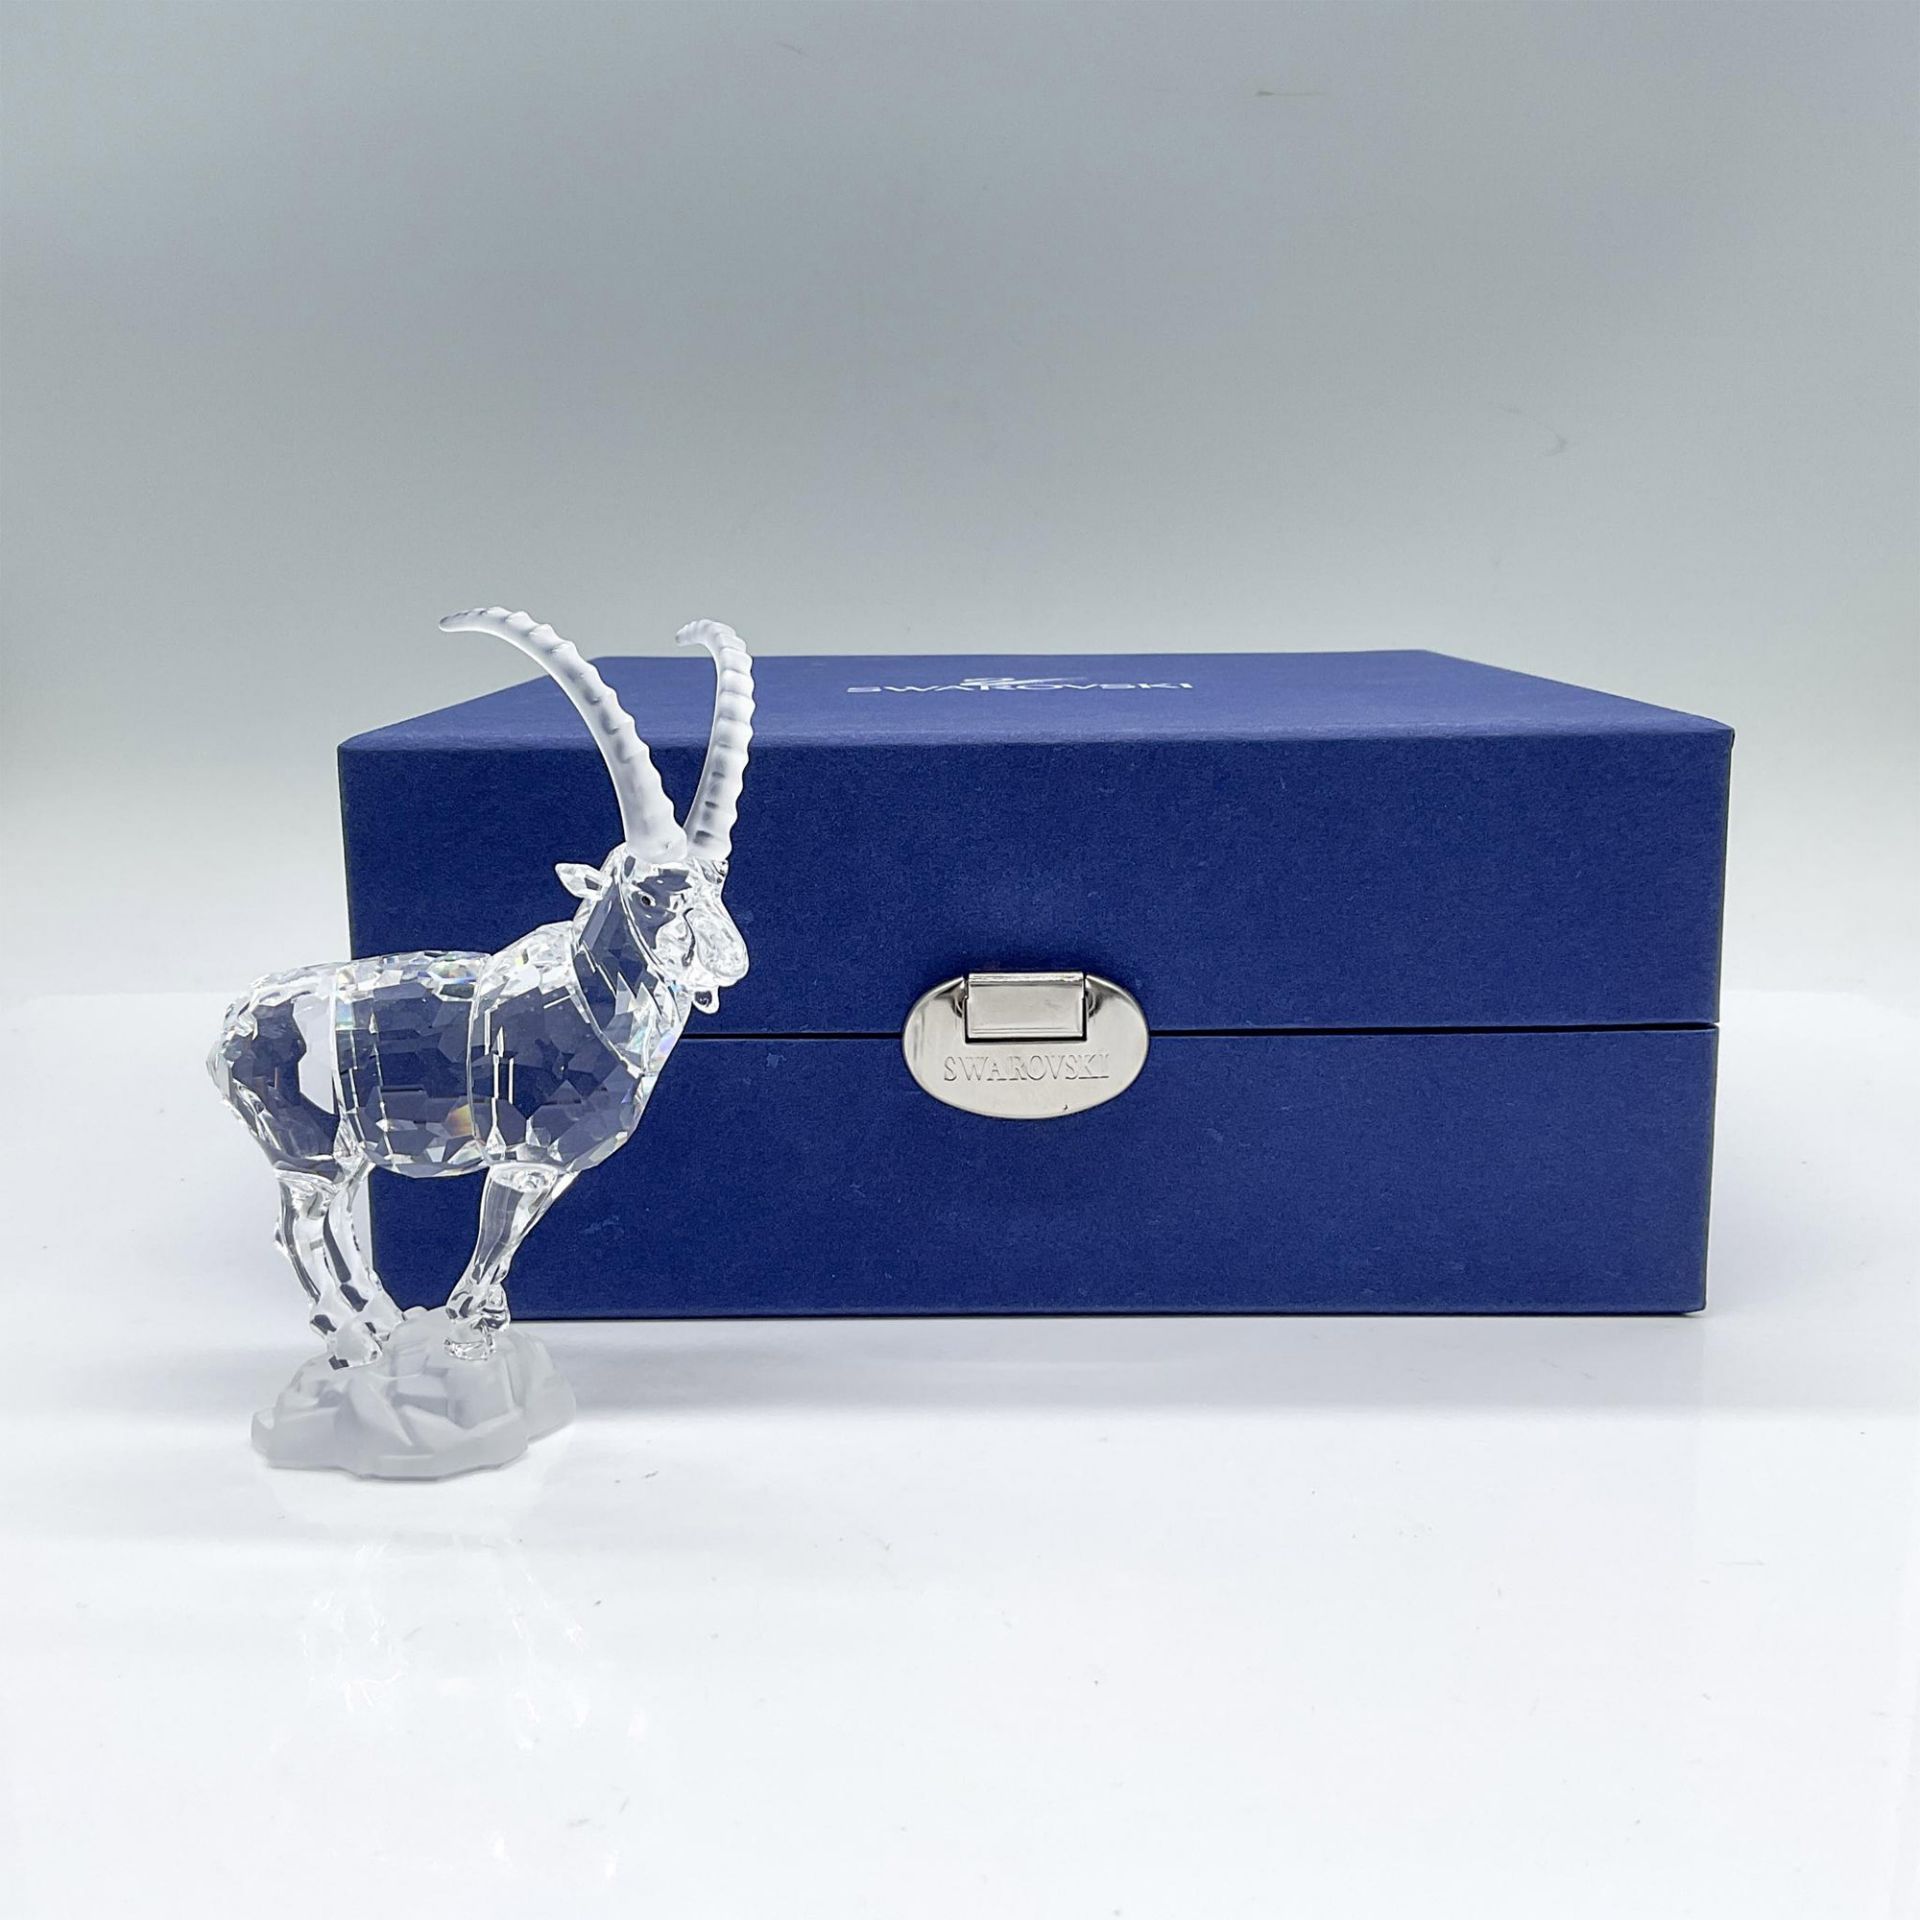 Swarovski Crystal Figurine, Ibex - Image 2 of 4